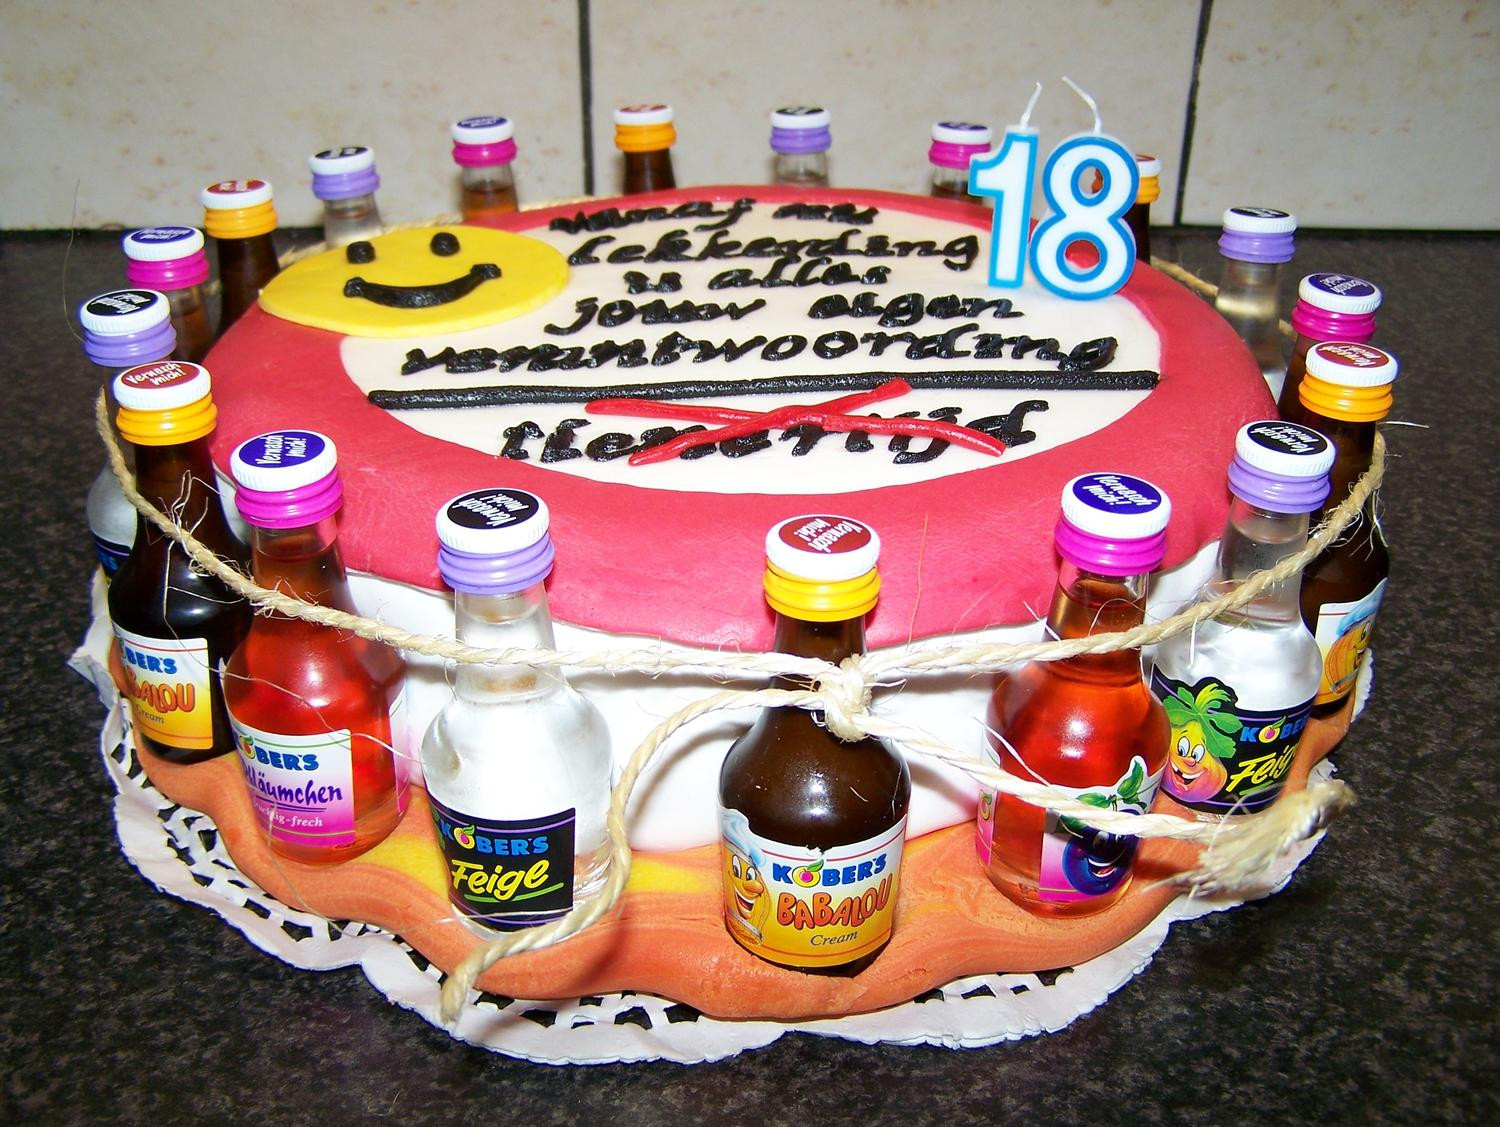 Geschenke Zum 18 Geburtstag
 Robby s Torte zum 18 Geburtstag Rezept kochbar